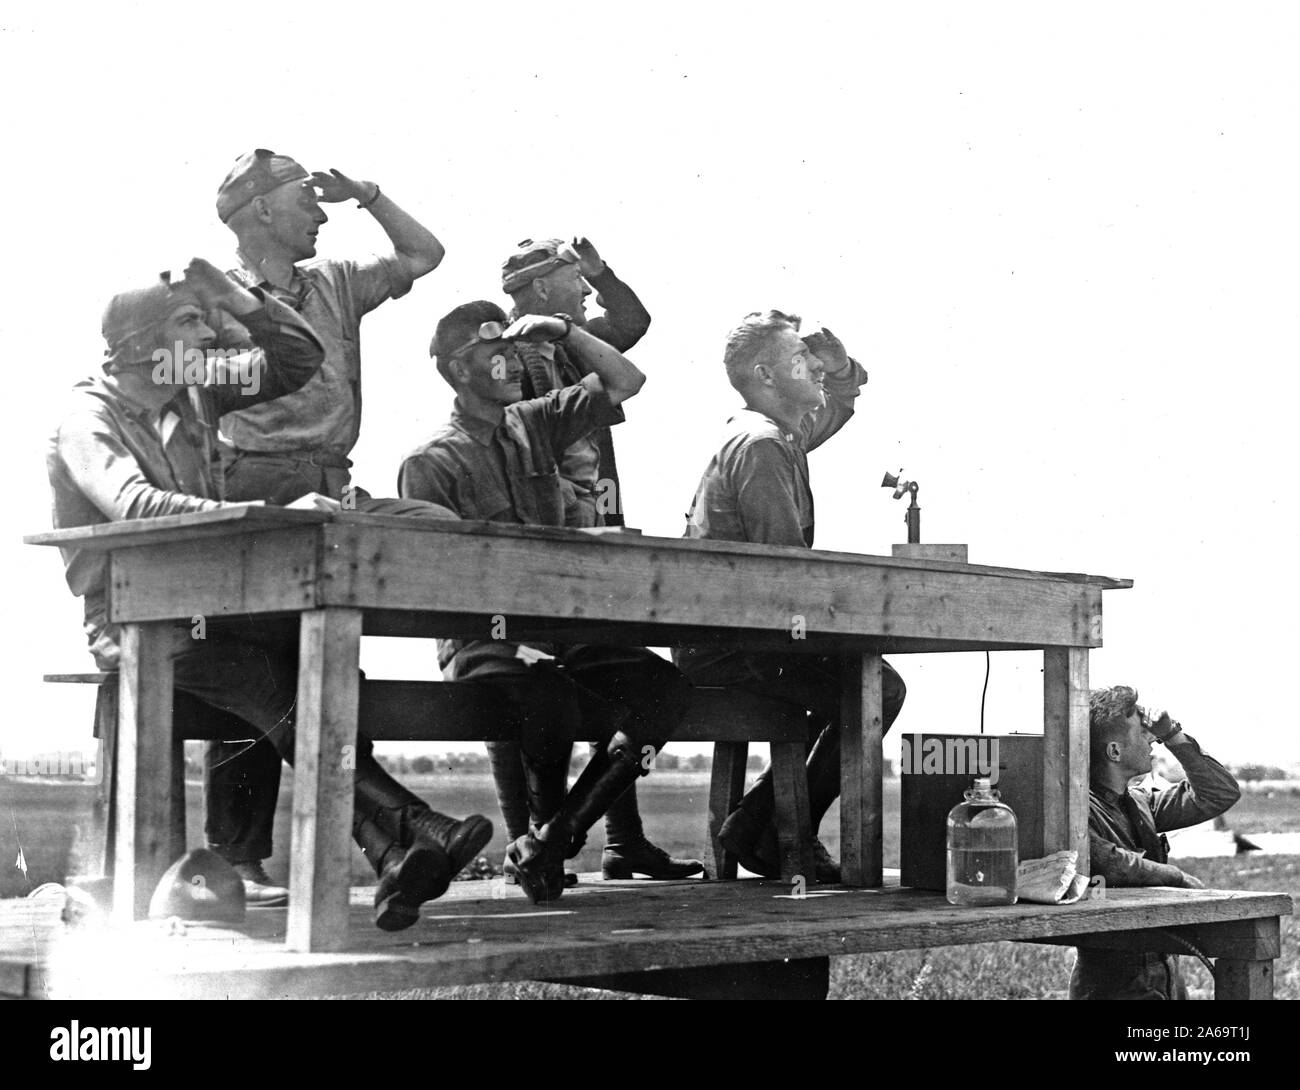 Erste Fotos von der Regierung die Erlaubnis im Army Aviation School in Mineola, L.I., N.Y., nach dem Ausbruch des Krieges. Foto zeigt Offiziere beobachten Studenten bei Testflügen. ca 1917 Stockfoto